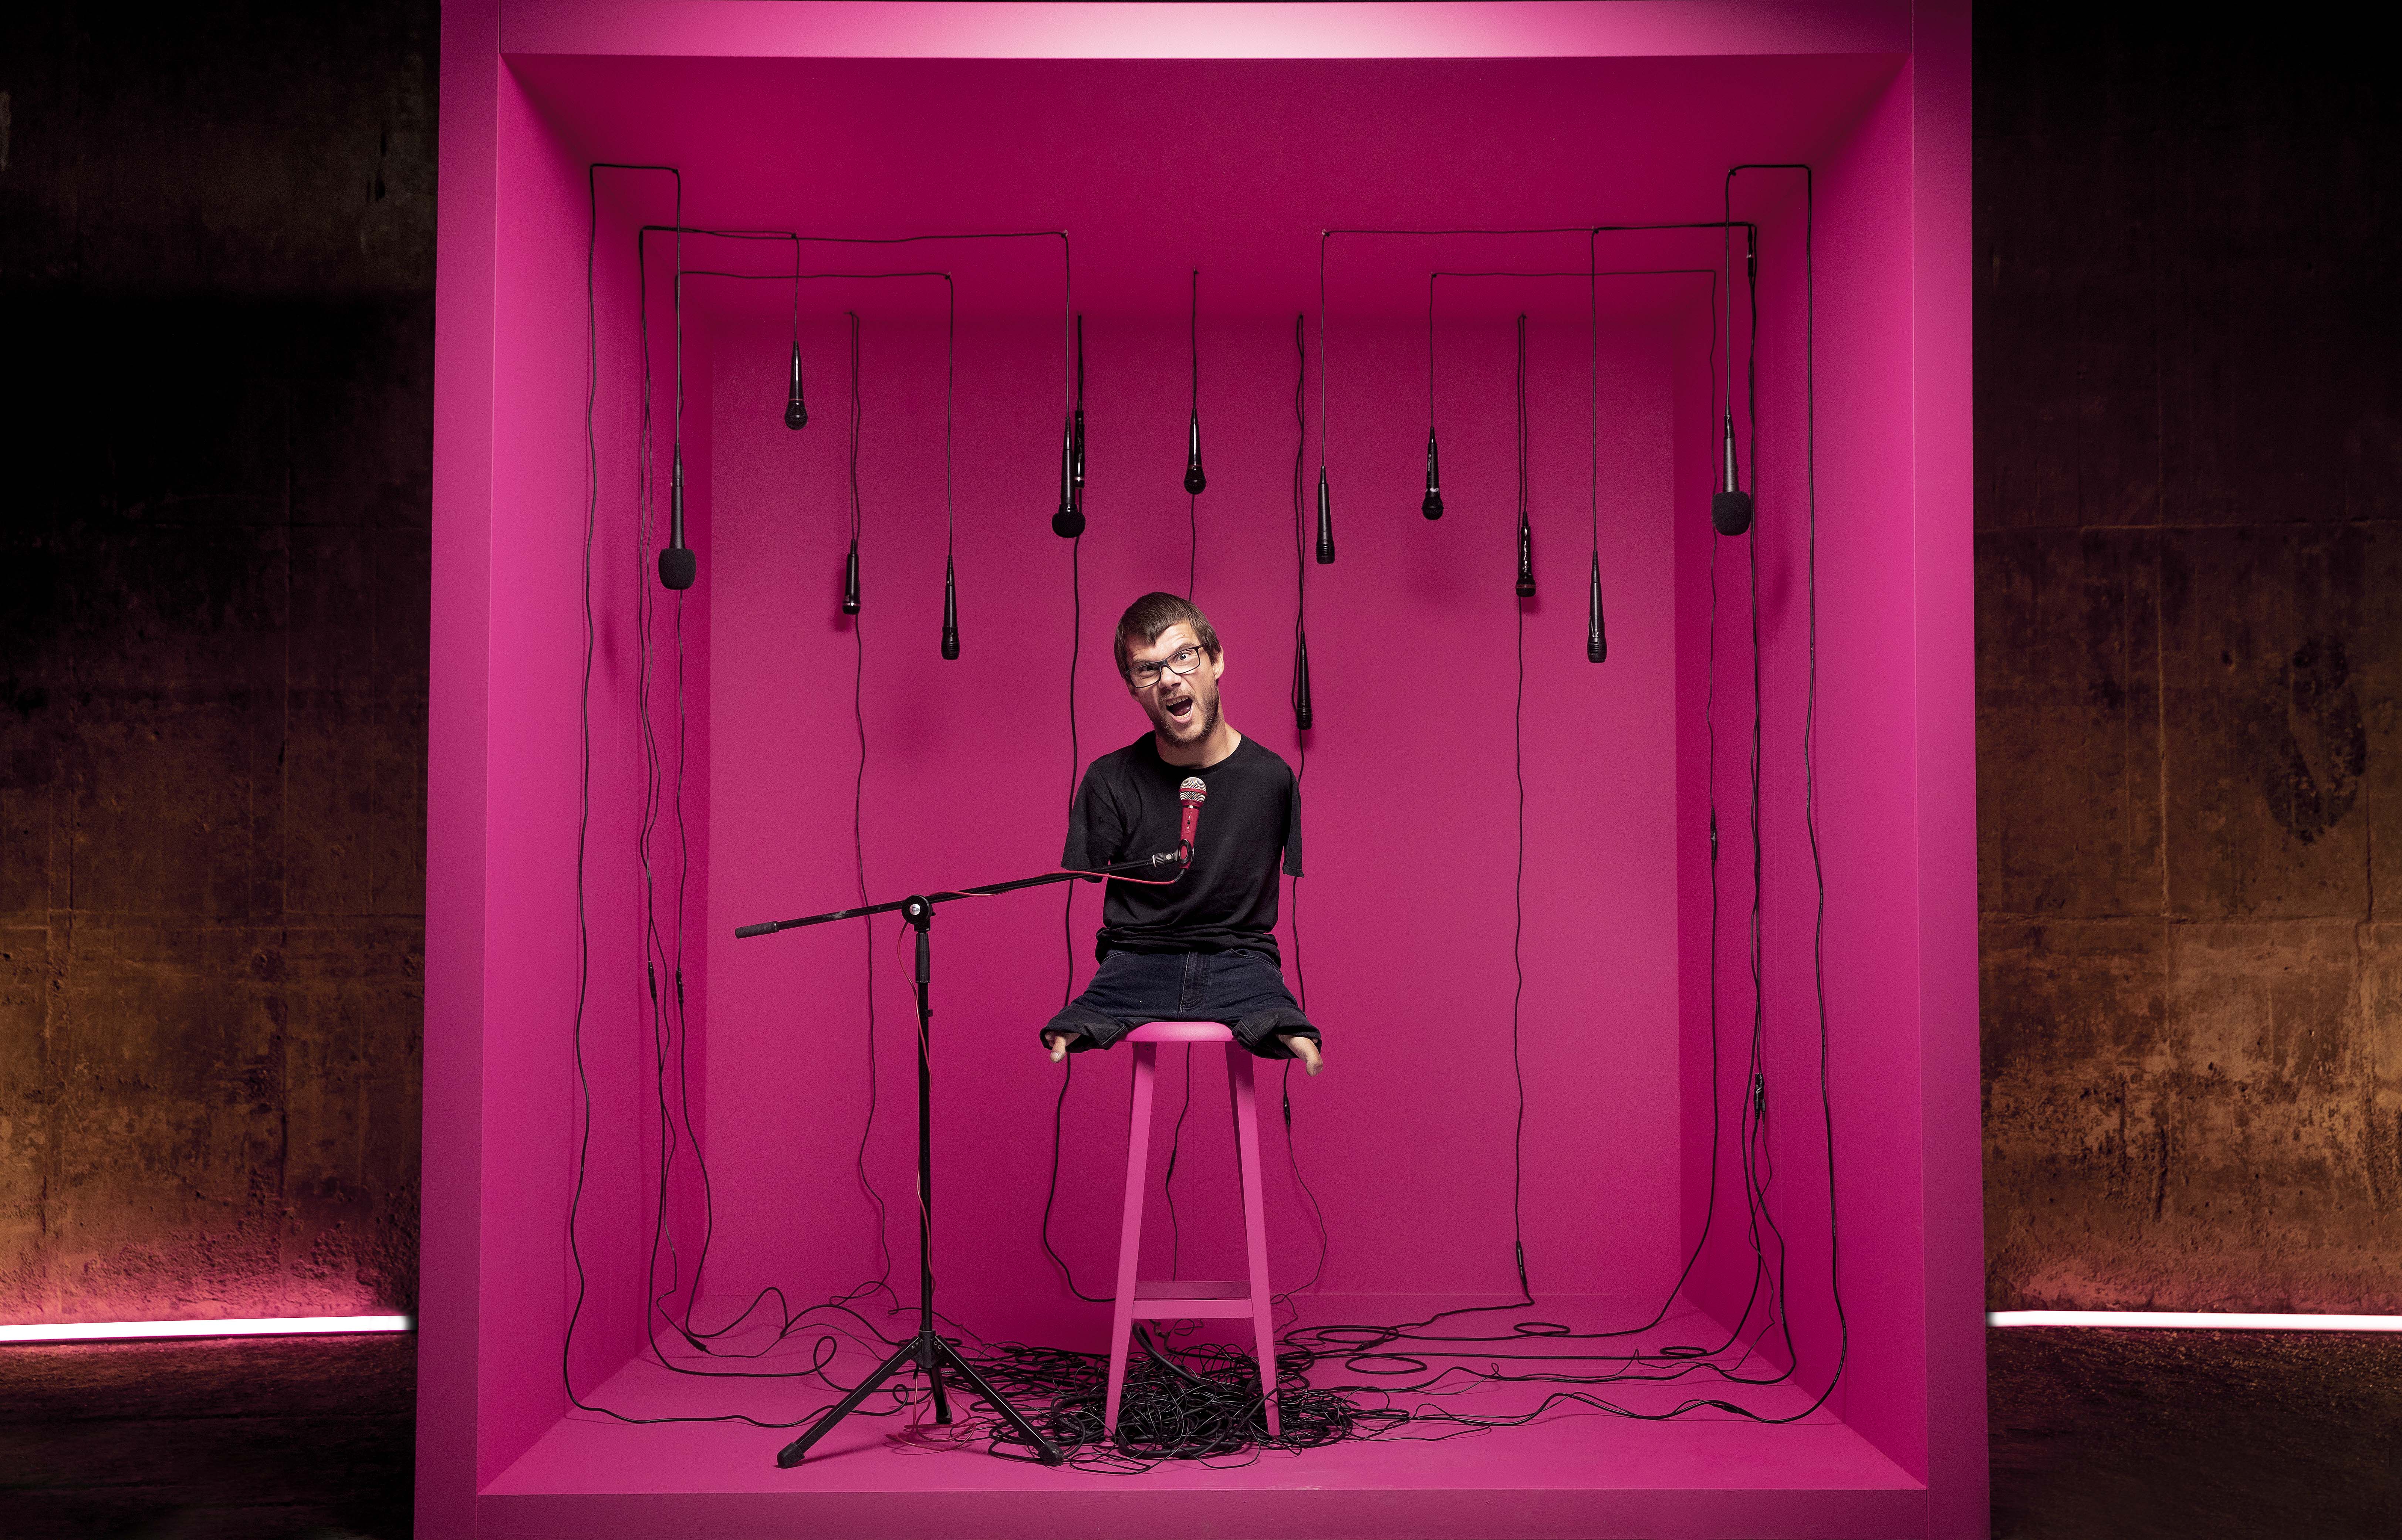 (1) Sebastian sitter inne i en rosa stor boks, med mikrofon han snakker inn i. Han sitter på en tamburrett og det er mikrofoner hengende ned fra taket. 